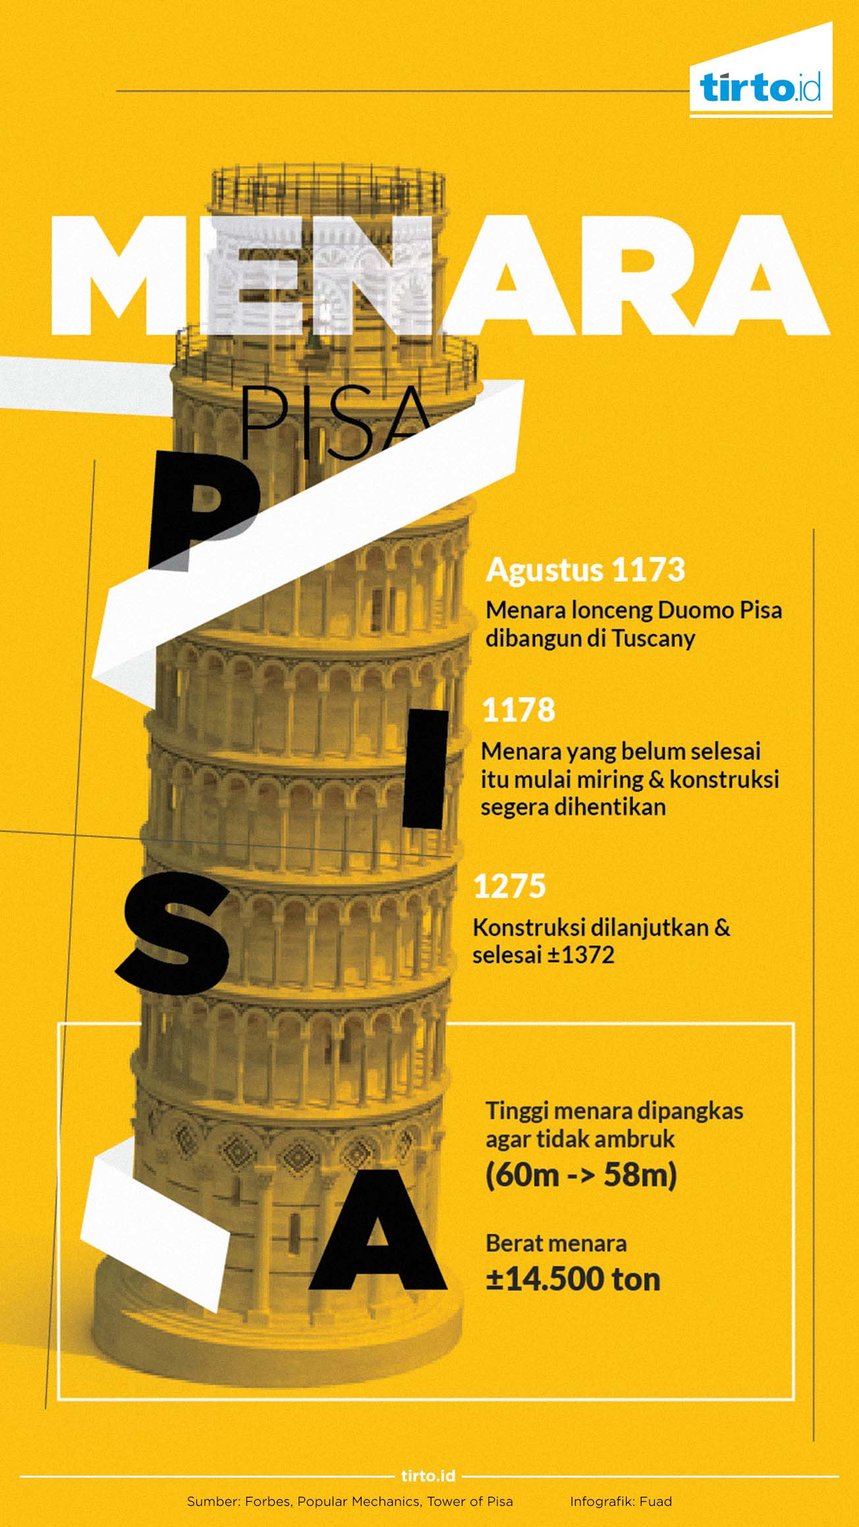 Teks Deskripsi Tentang Menara Pisa Dalam Bahasa Inggris